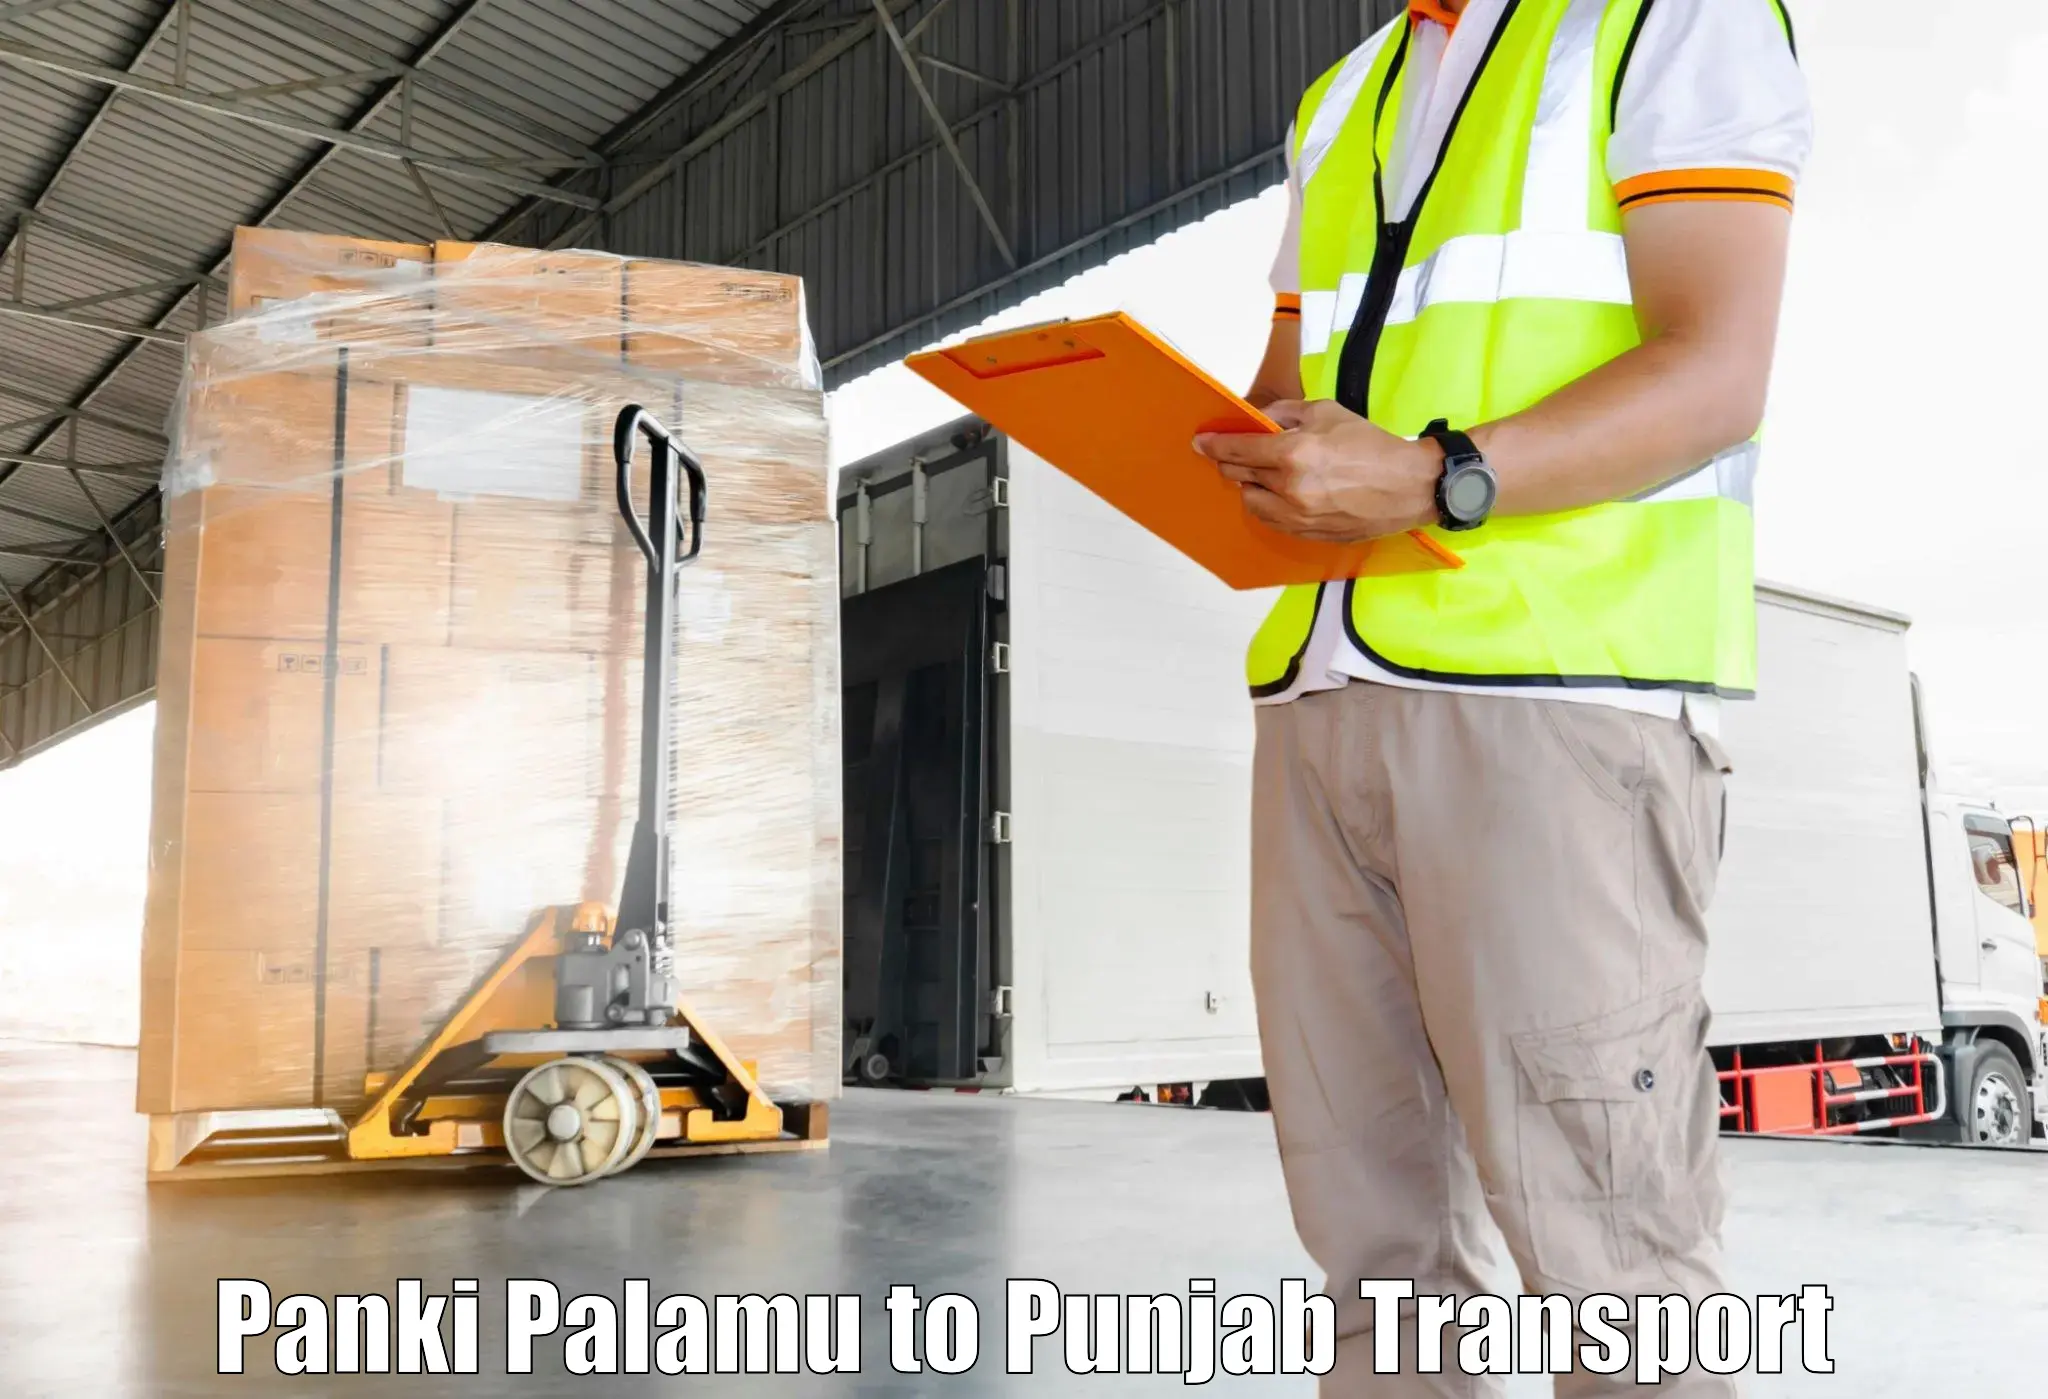 Transport in sharing in Panki Palamu to Nawanshahr